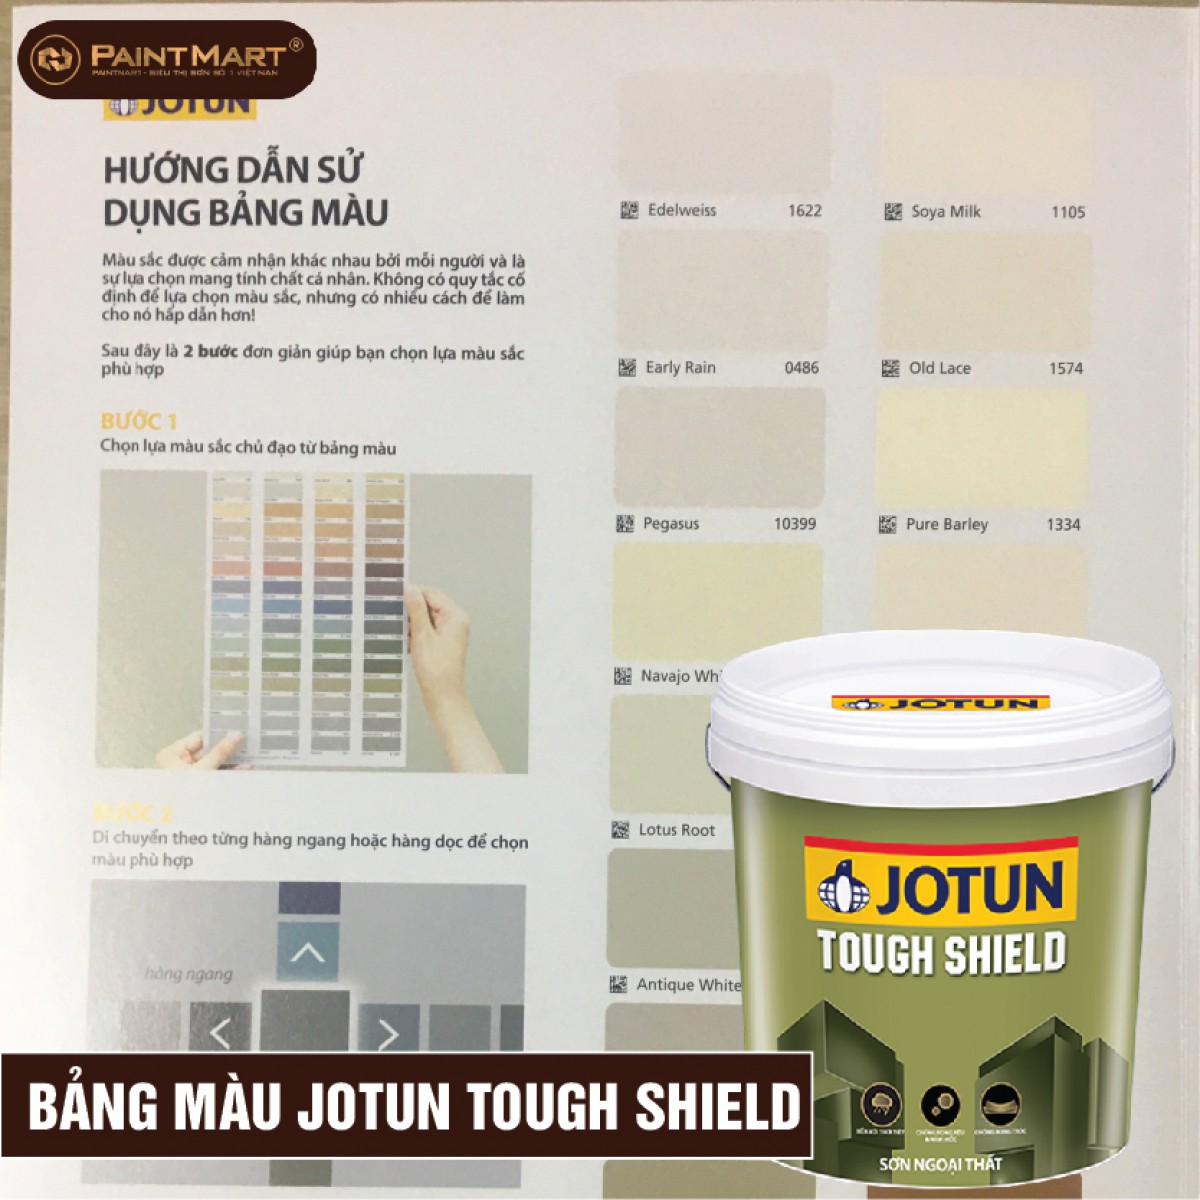 Sơn Ngoại Thất Jotun Tough Shield là sản phẩm sơn cao cấp với khả năng chống thời tiết tuyệt vời. Với sự kết hợp hoàn hảo giữa tính năng và thẩm mỹ, sản phẩm này sẽ giúp nhà bạn trông đẹp và bền vững hơn.